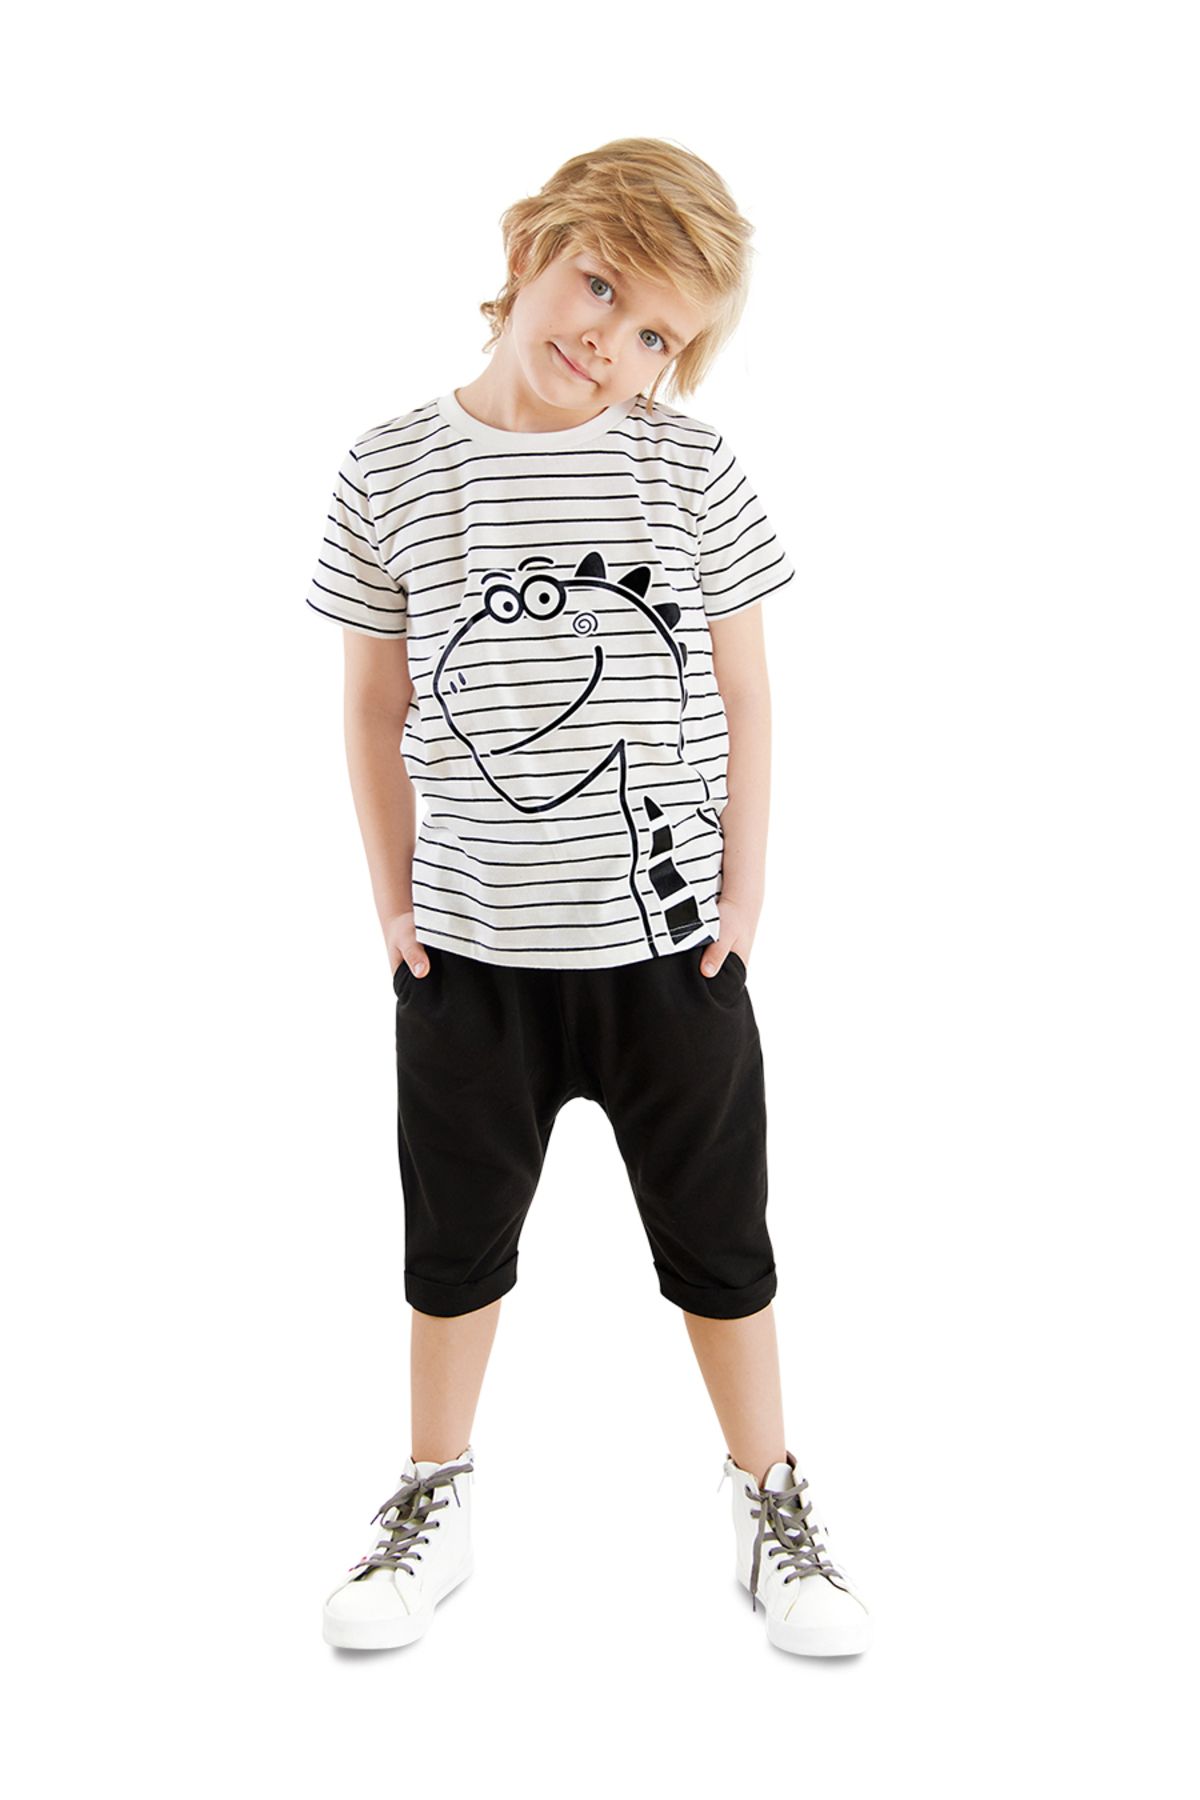 Denokids Sevimli Dino Çizgili Erkek Çocuk Yazlık T-shirt Kapri Şort Takım